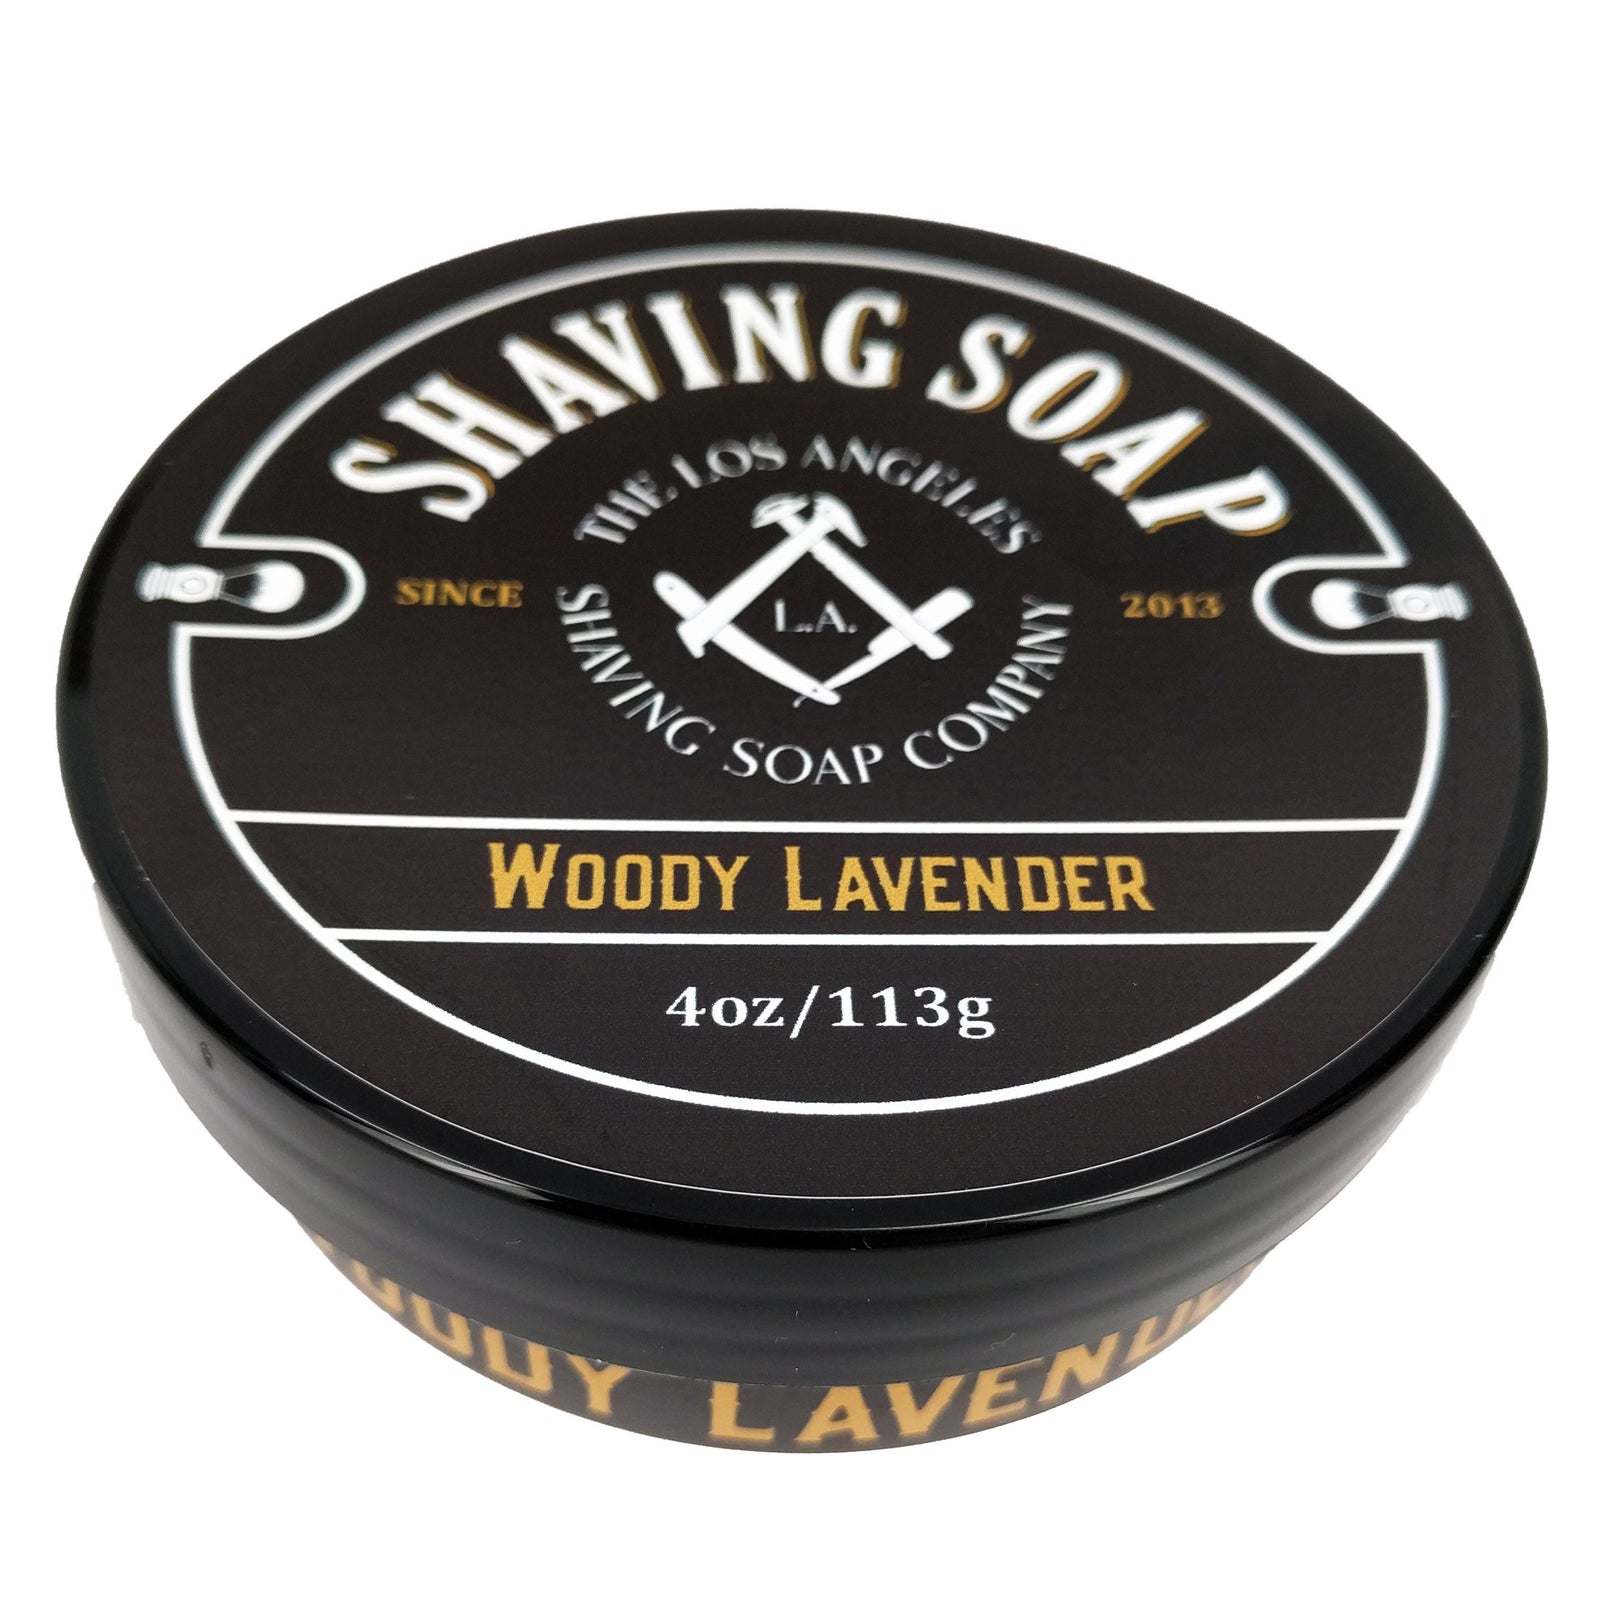 LA Shaving Soap Co. - Woody Lavender Shaving Soap